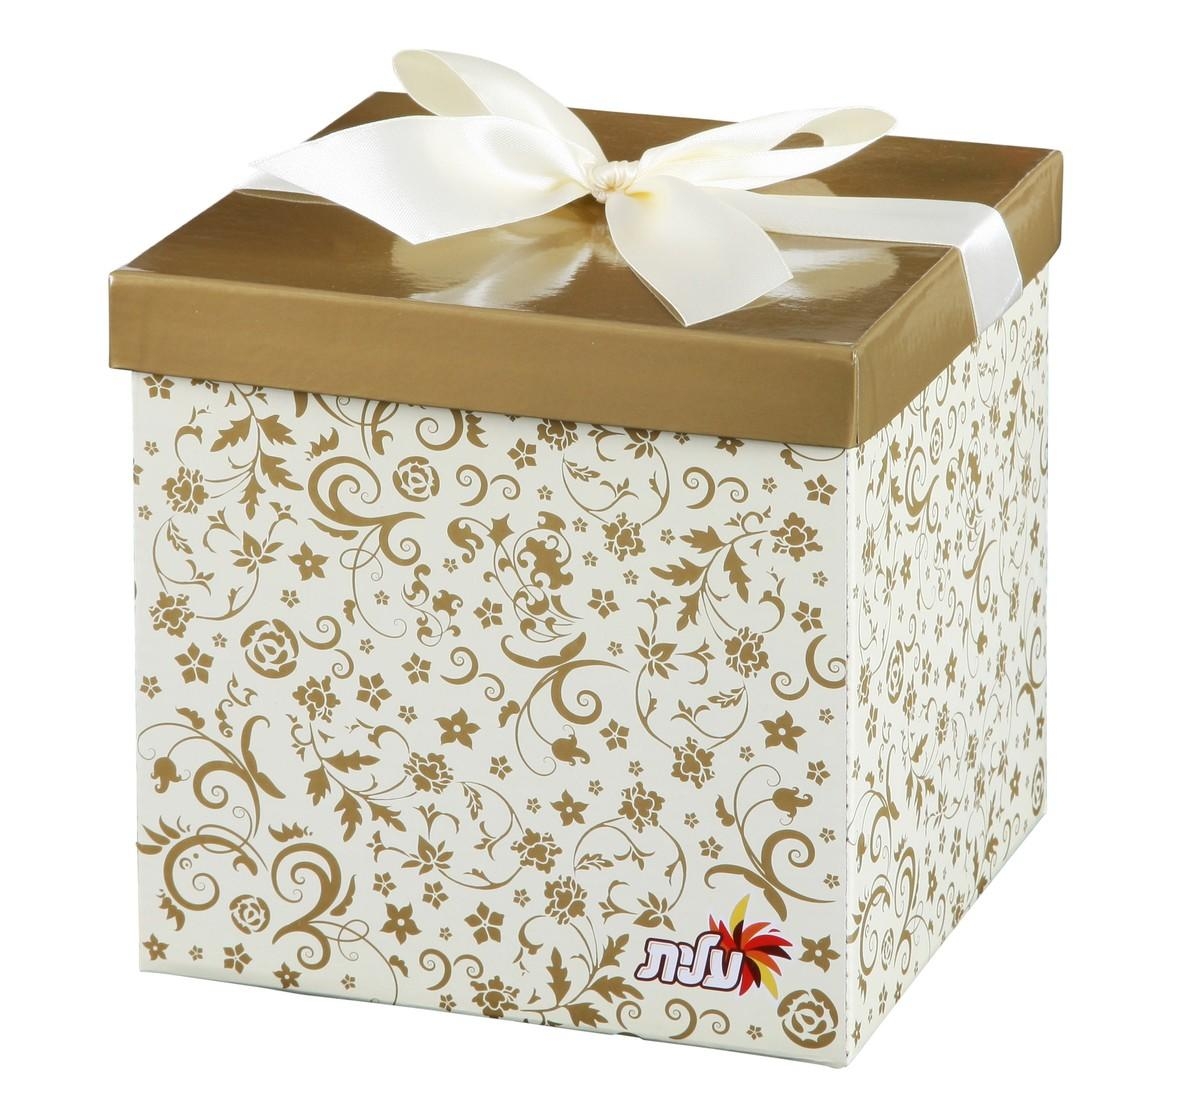 Sweet Box Gift Basket - 1